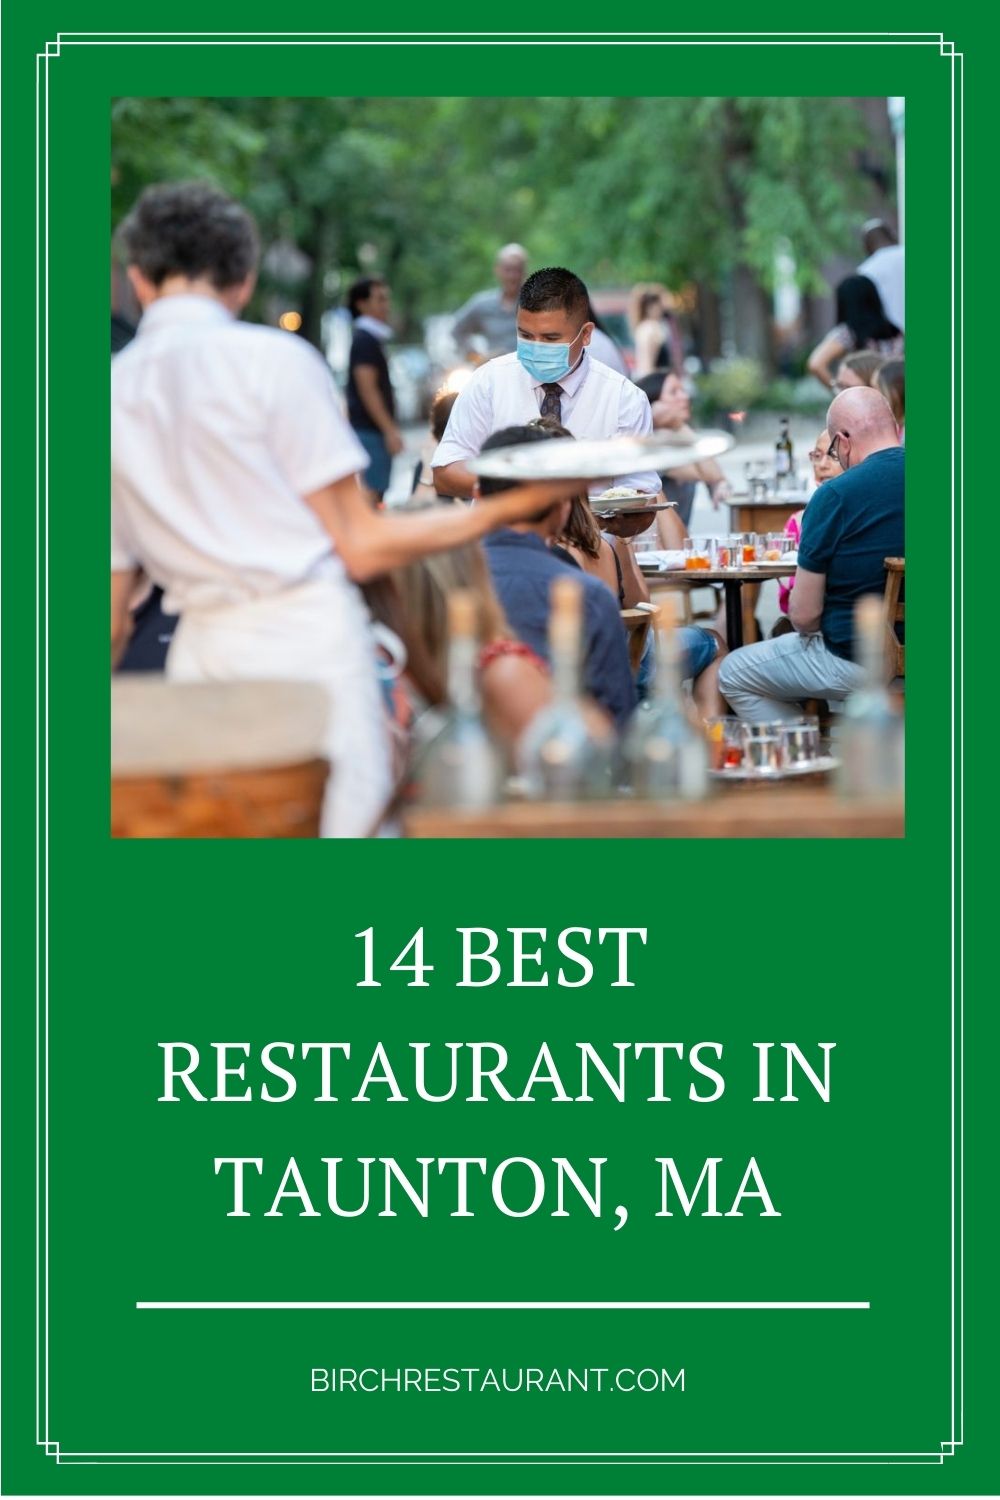 Best Restaurants in Taunton